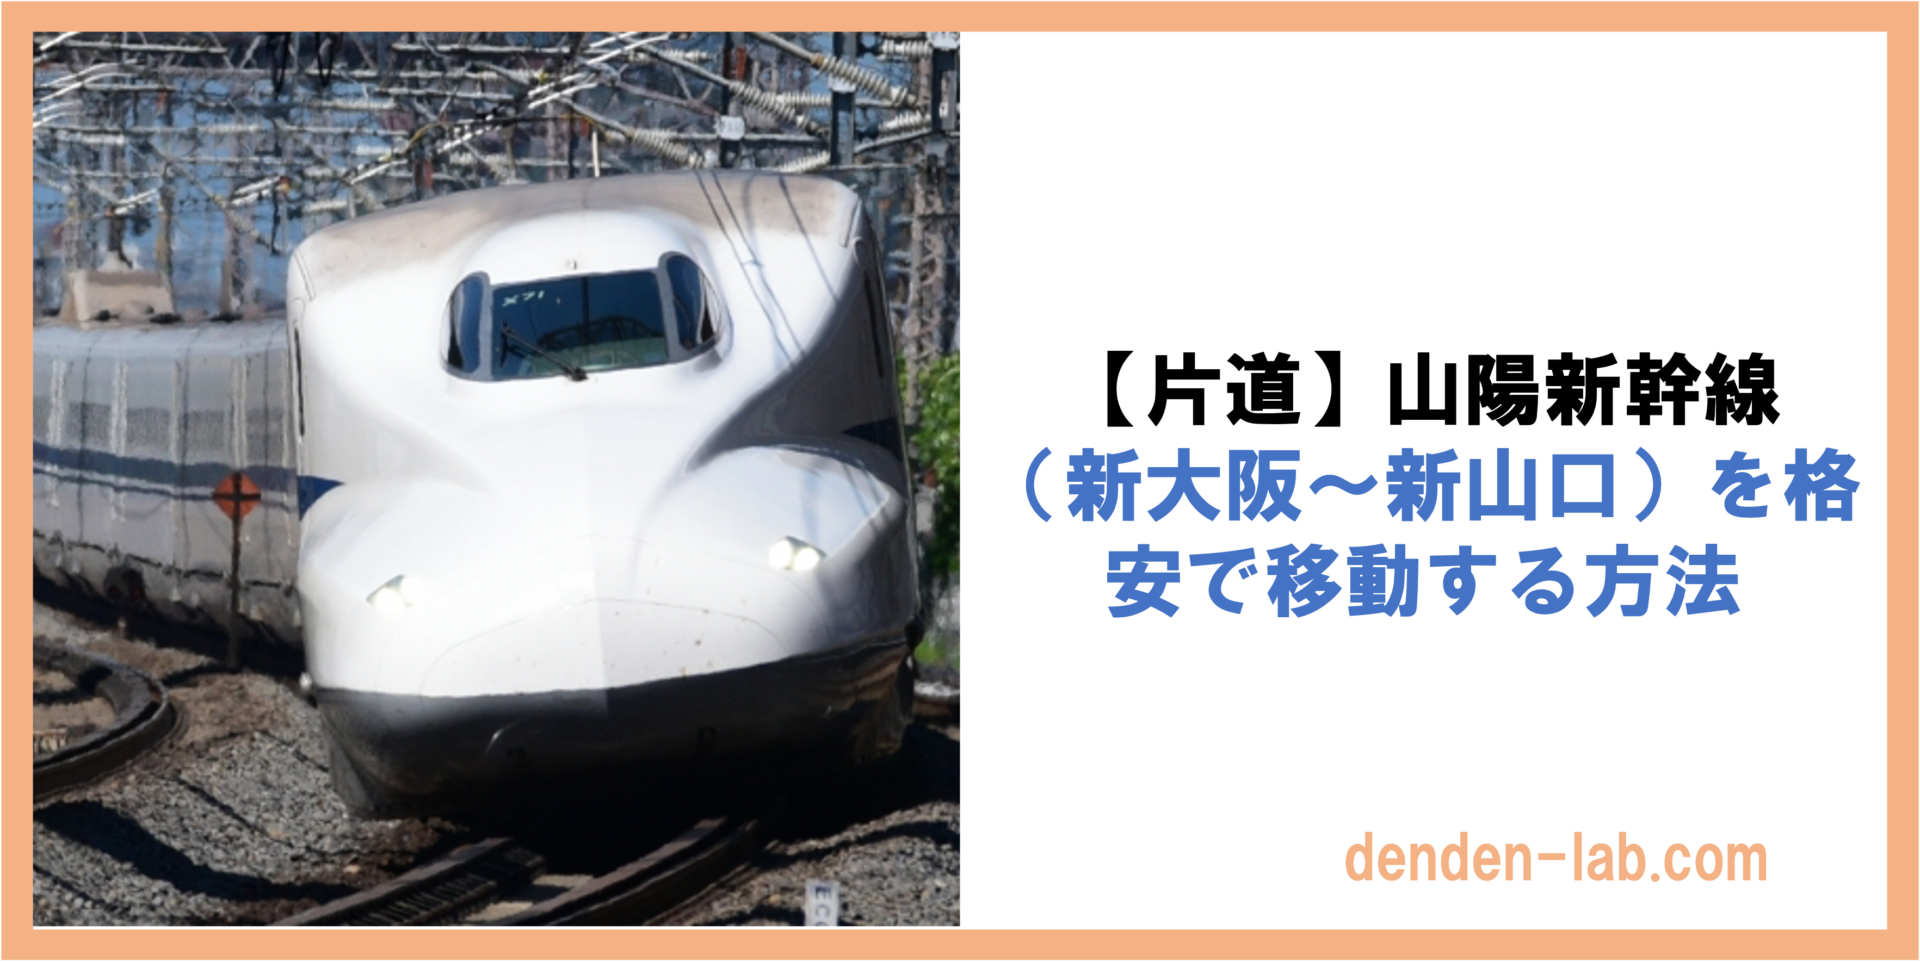 【片道】山陽新幹線 （新大阪〜新山口）を格安で移動する方法